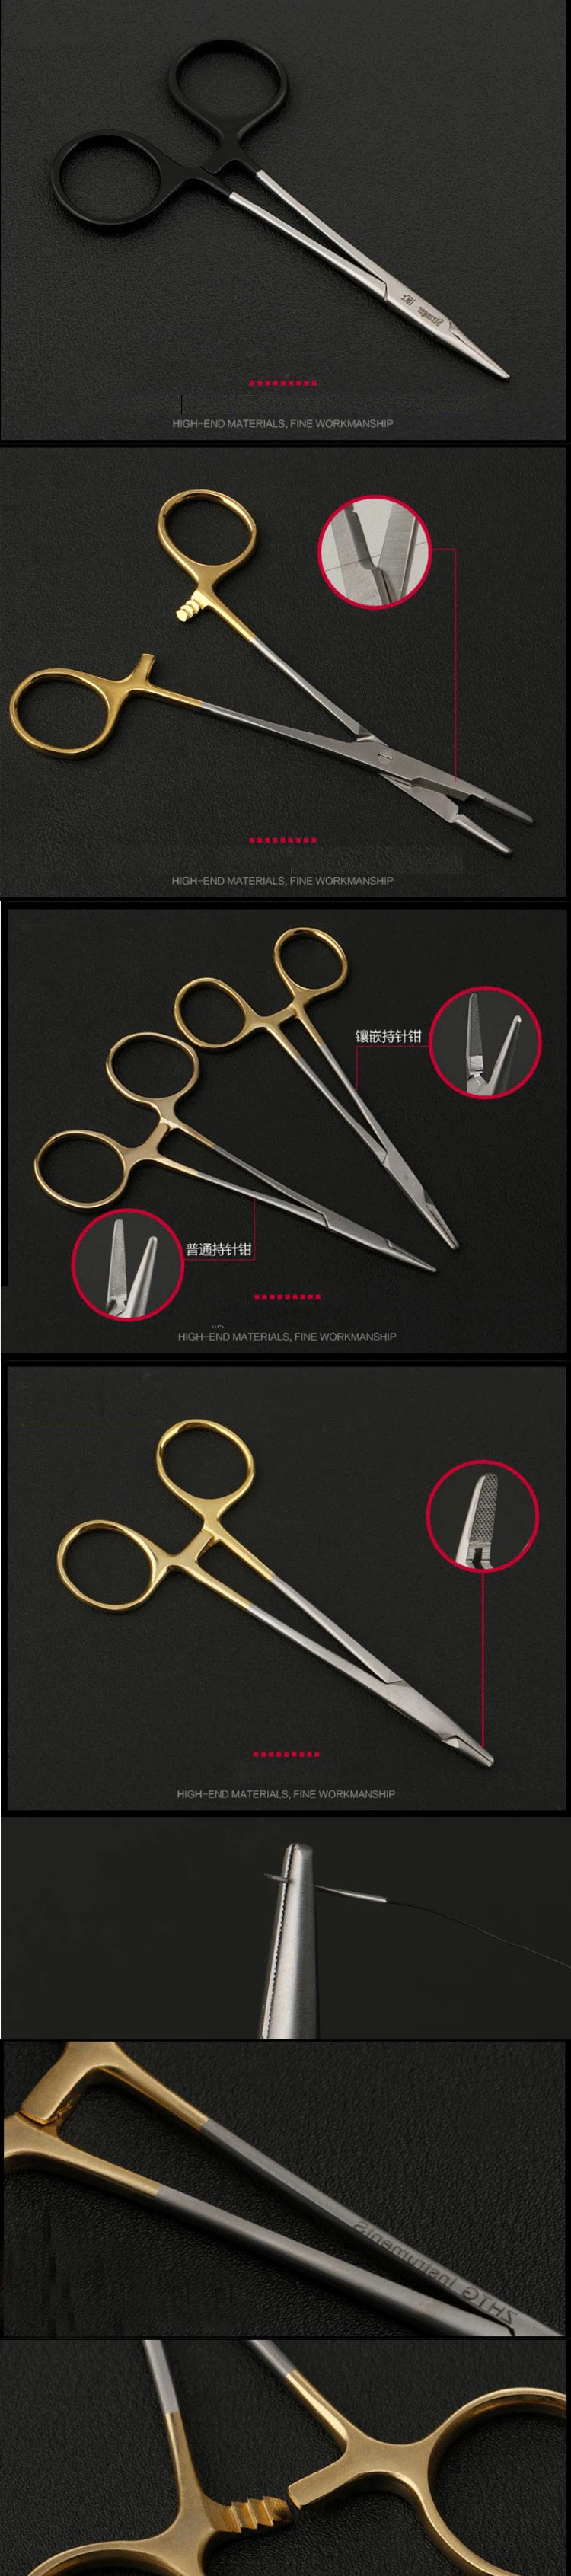 Tiangong держатель иглы с золотой ручкой двойной инструмент для хирургии век Jinyan игла зажим вставка с ножницами Многофункциональные клещи